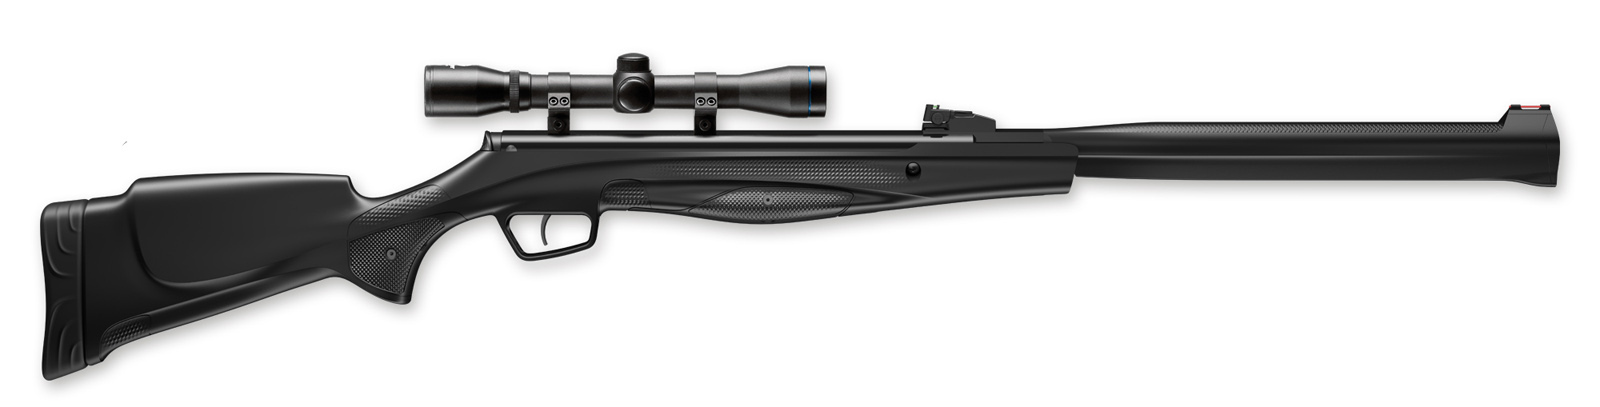 Das Premium Luftgewehr mit ergonomischem Synthetikschaft und einem integrierten S3 Schalldämpfer– das Stoeger RX20 S3 Combo im Kaliber 4,5 mm (Diabolos), hier inkl. 4x32 Zielfernrohr.